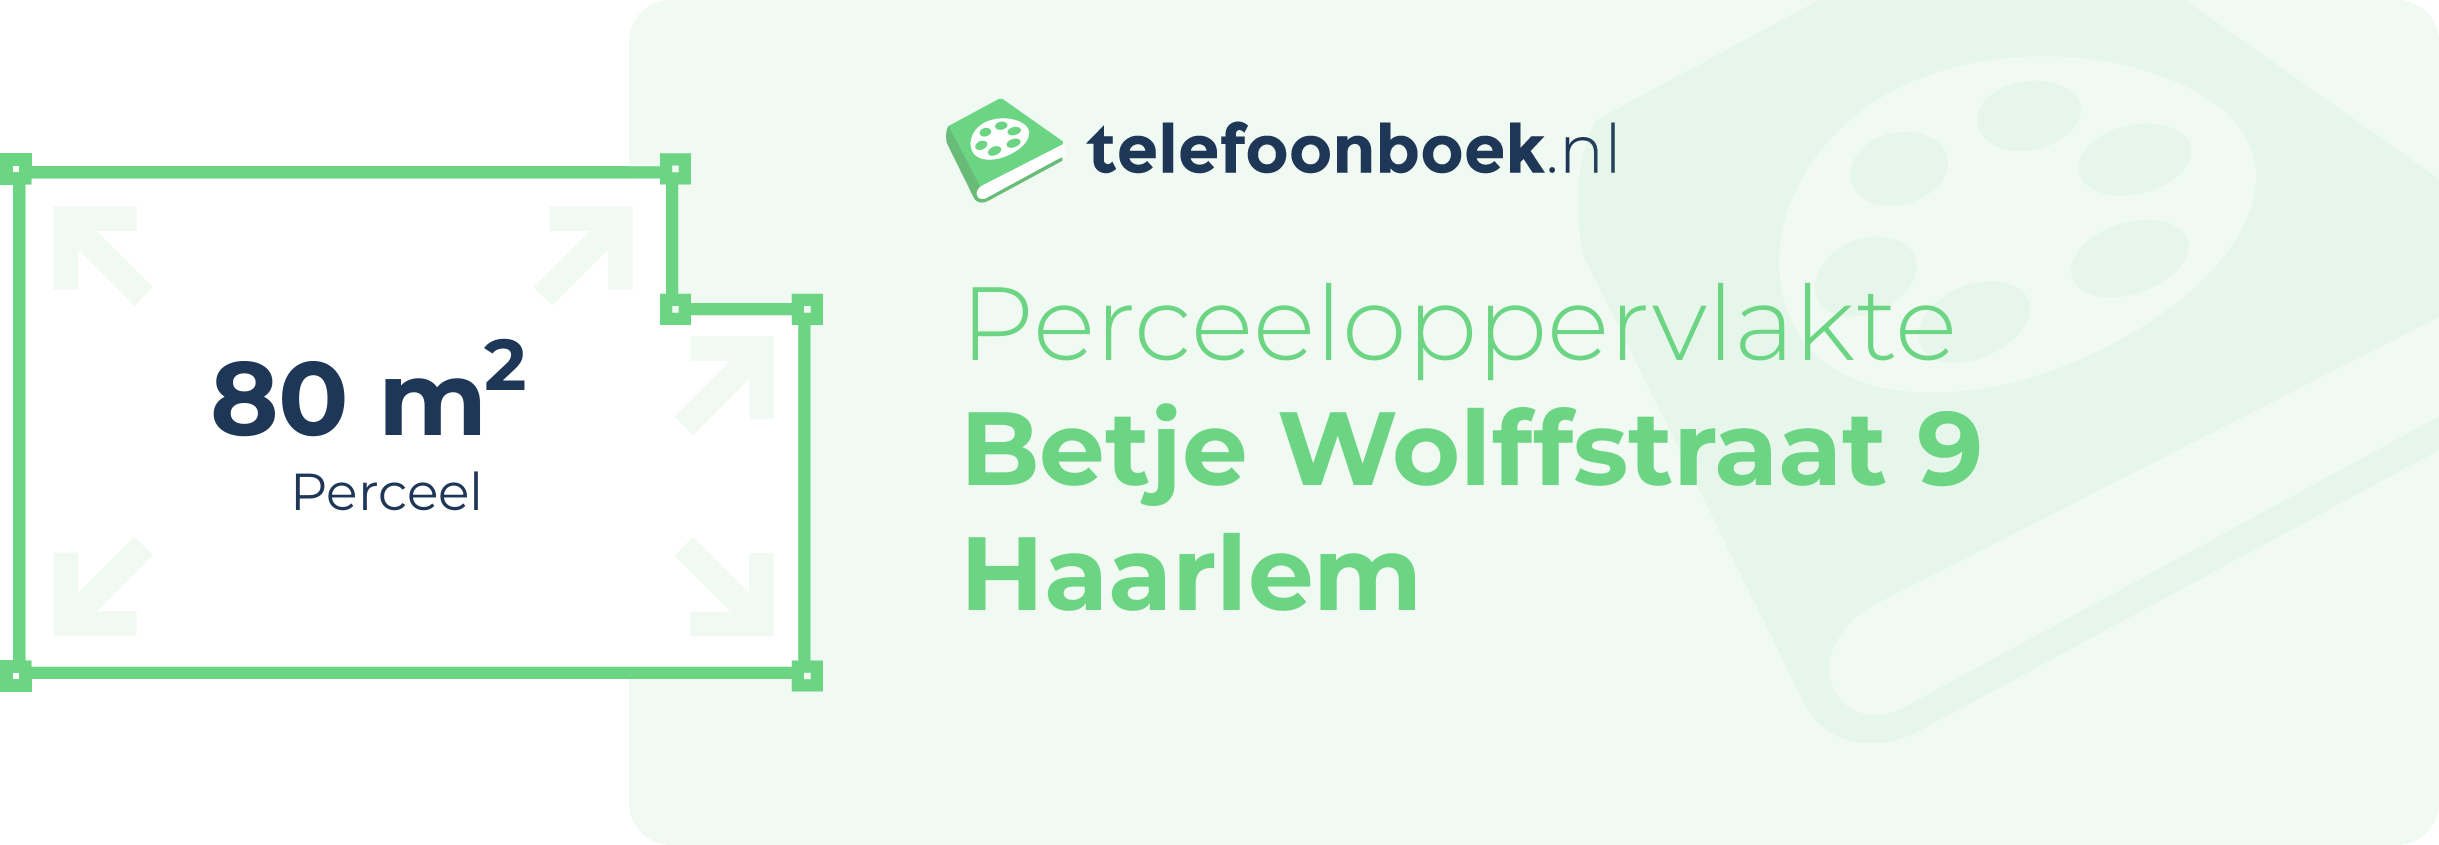 Perceeloppervlakte Betje Wolffstraat 9 Haarlem